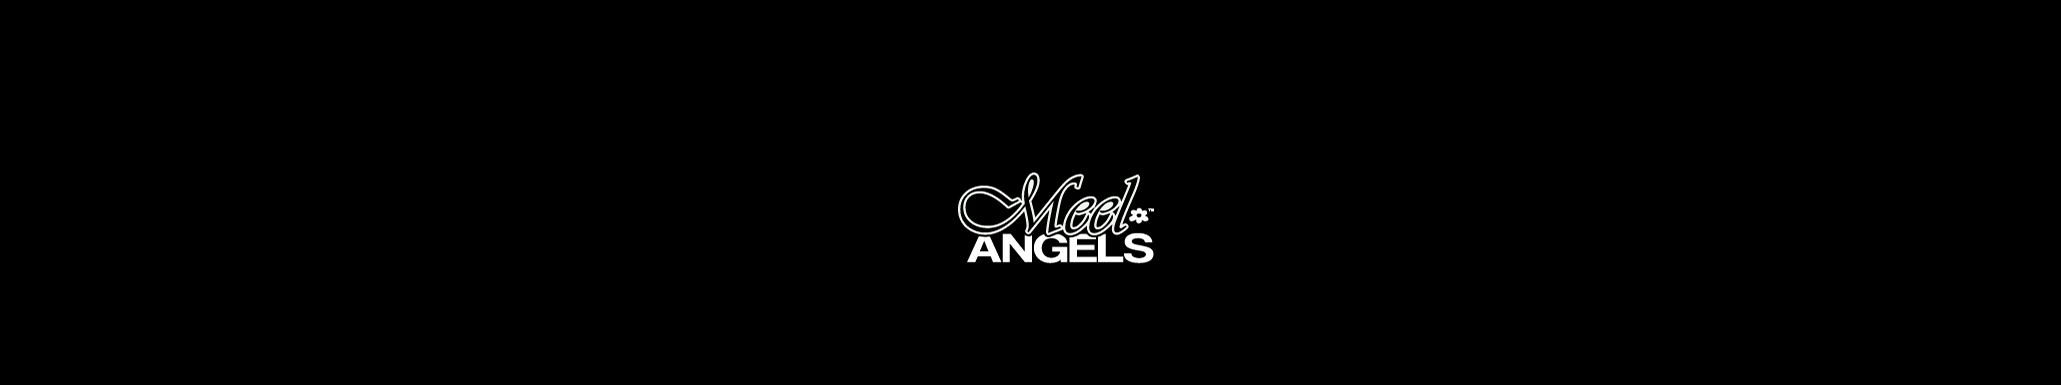 Meel Angels's profile banner